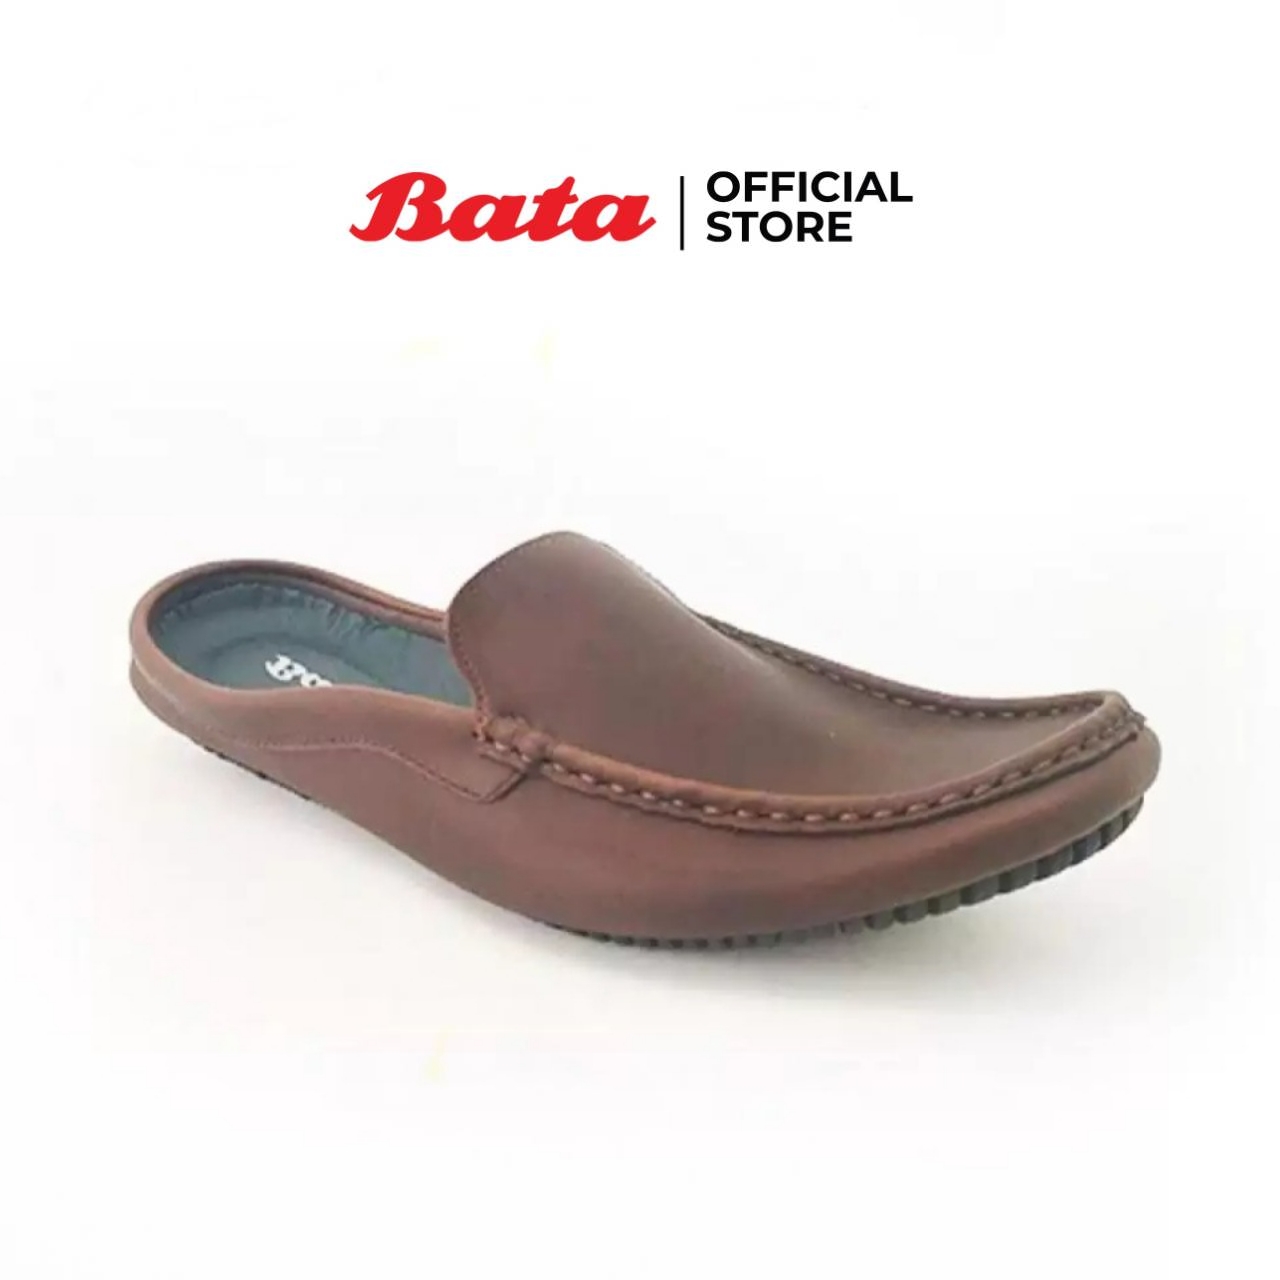 Bata MEN'S CASUAL รองเท้าลำลอง MOCCASIN แบบสวม เปิดส้น สีน้ำตาล รหัส 8514302 / สีดำ รหัส 8516302 Mencasual Fashion